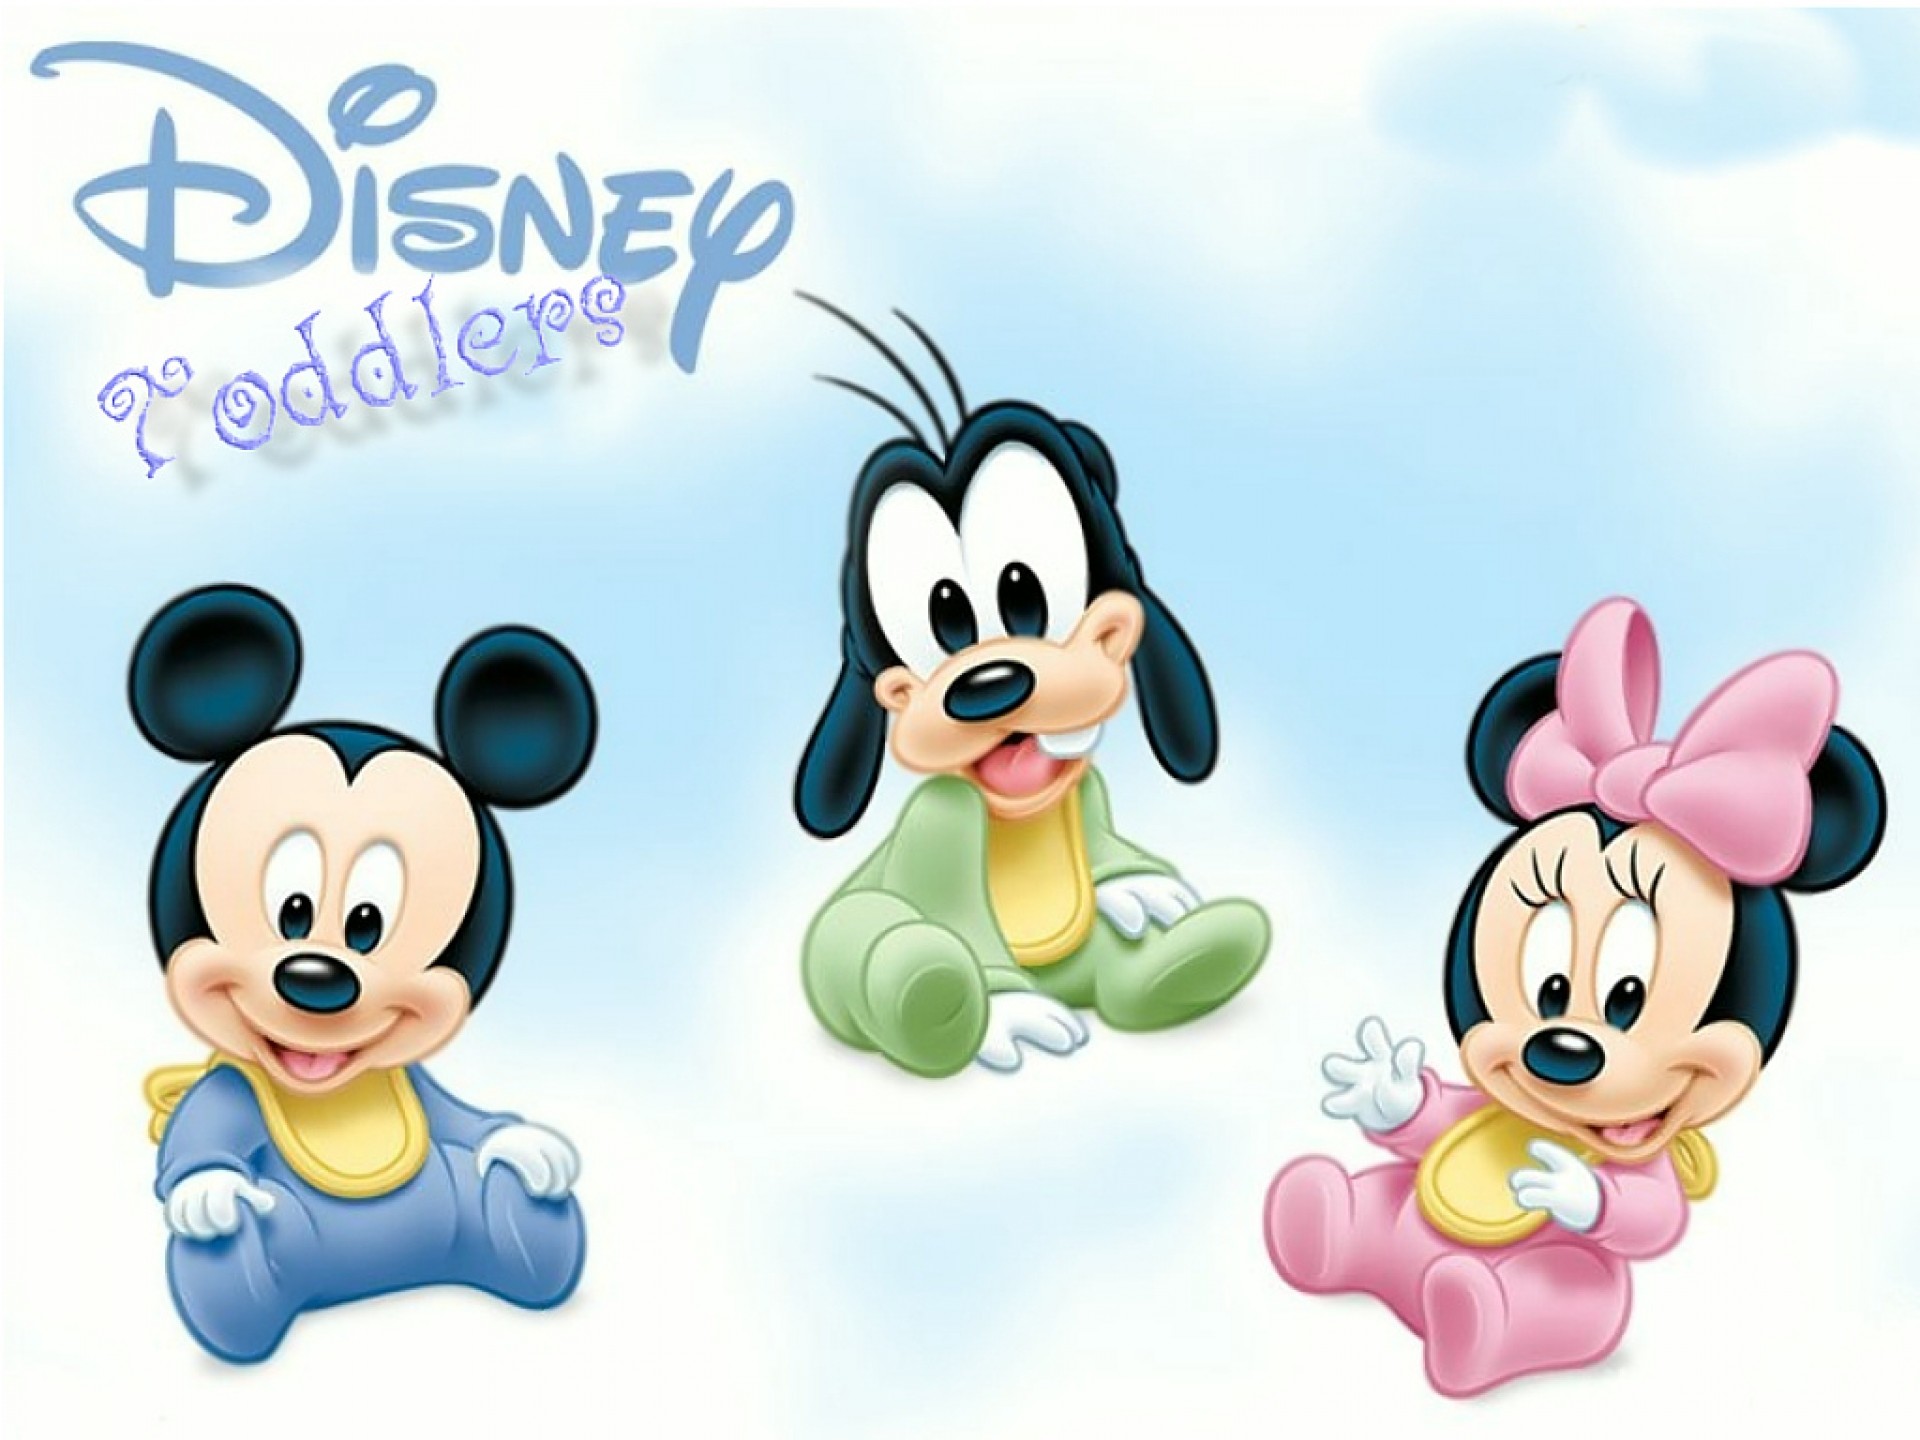 500 Disney Characters Wallpapers  Wallpaperscom